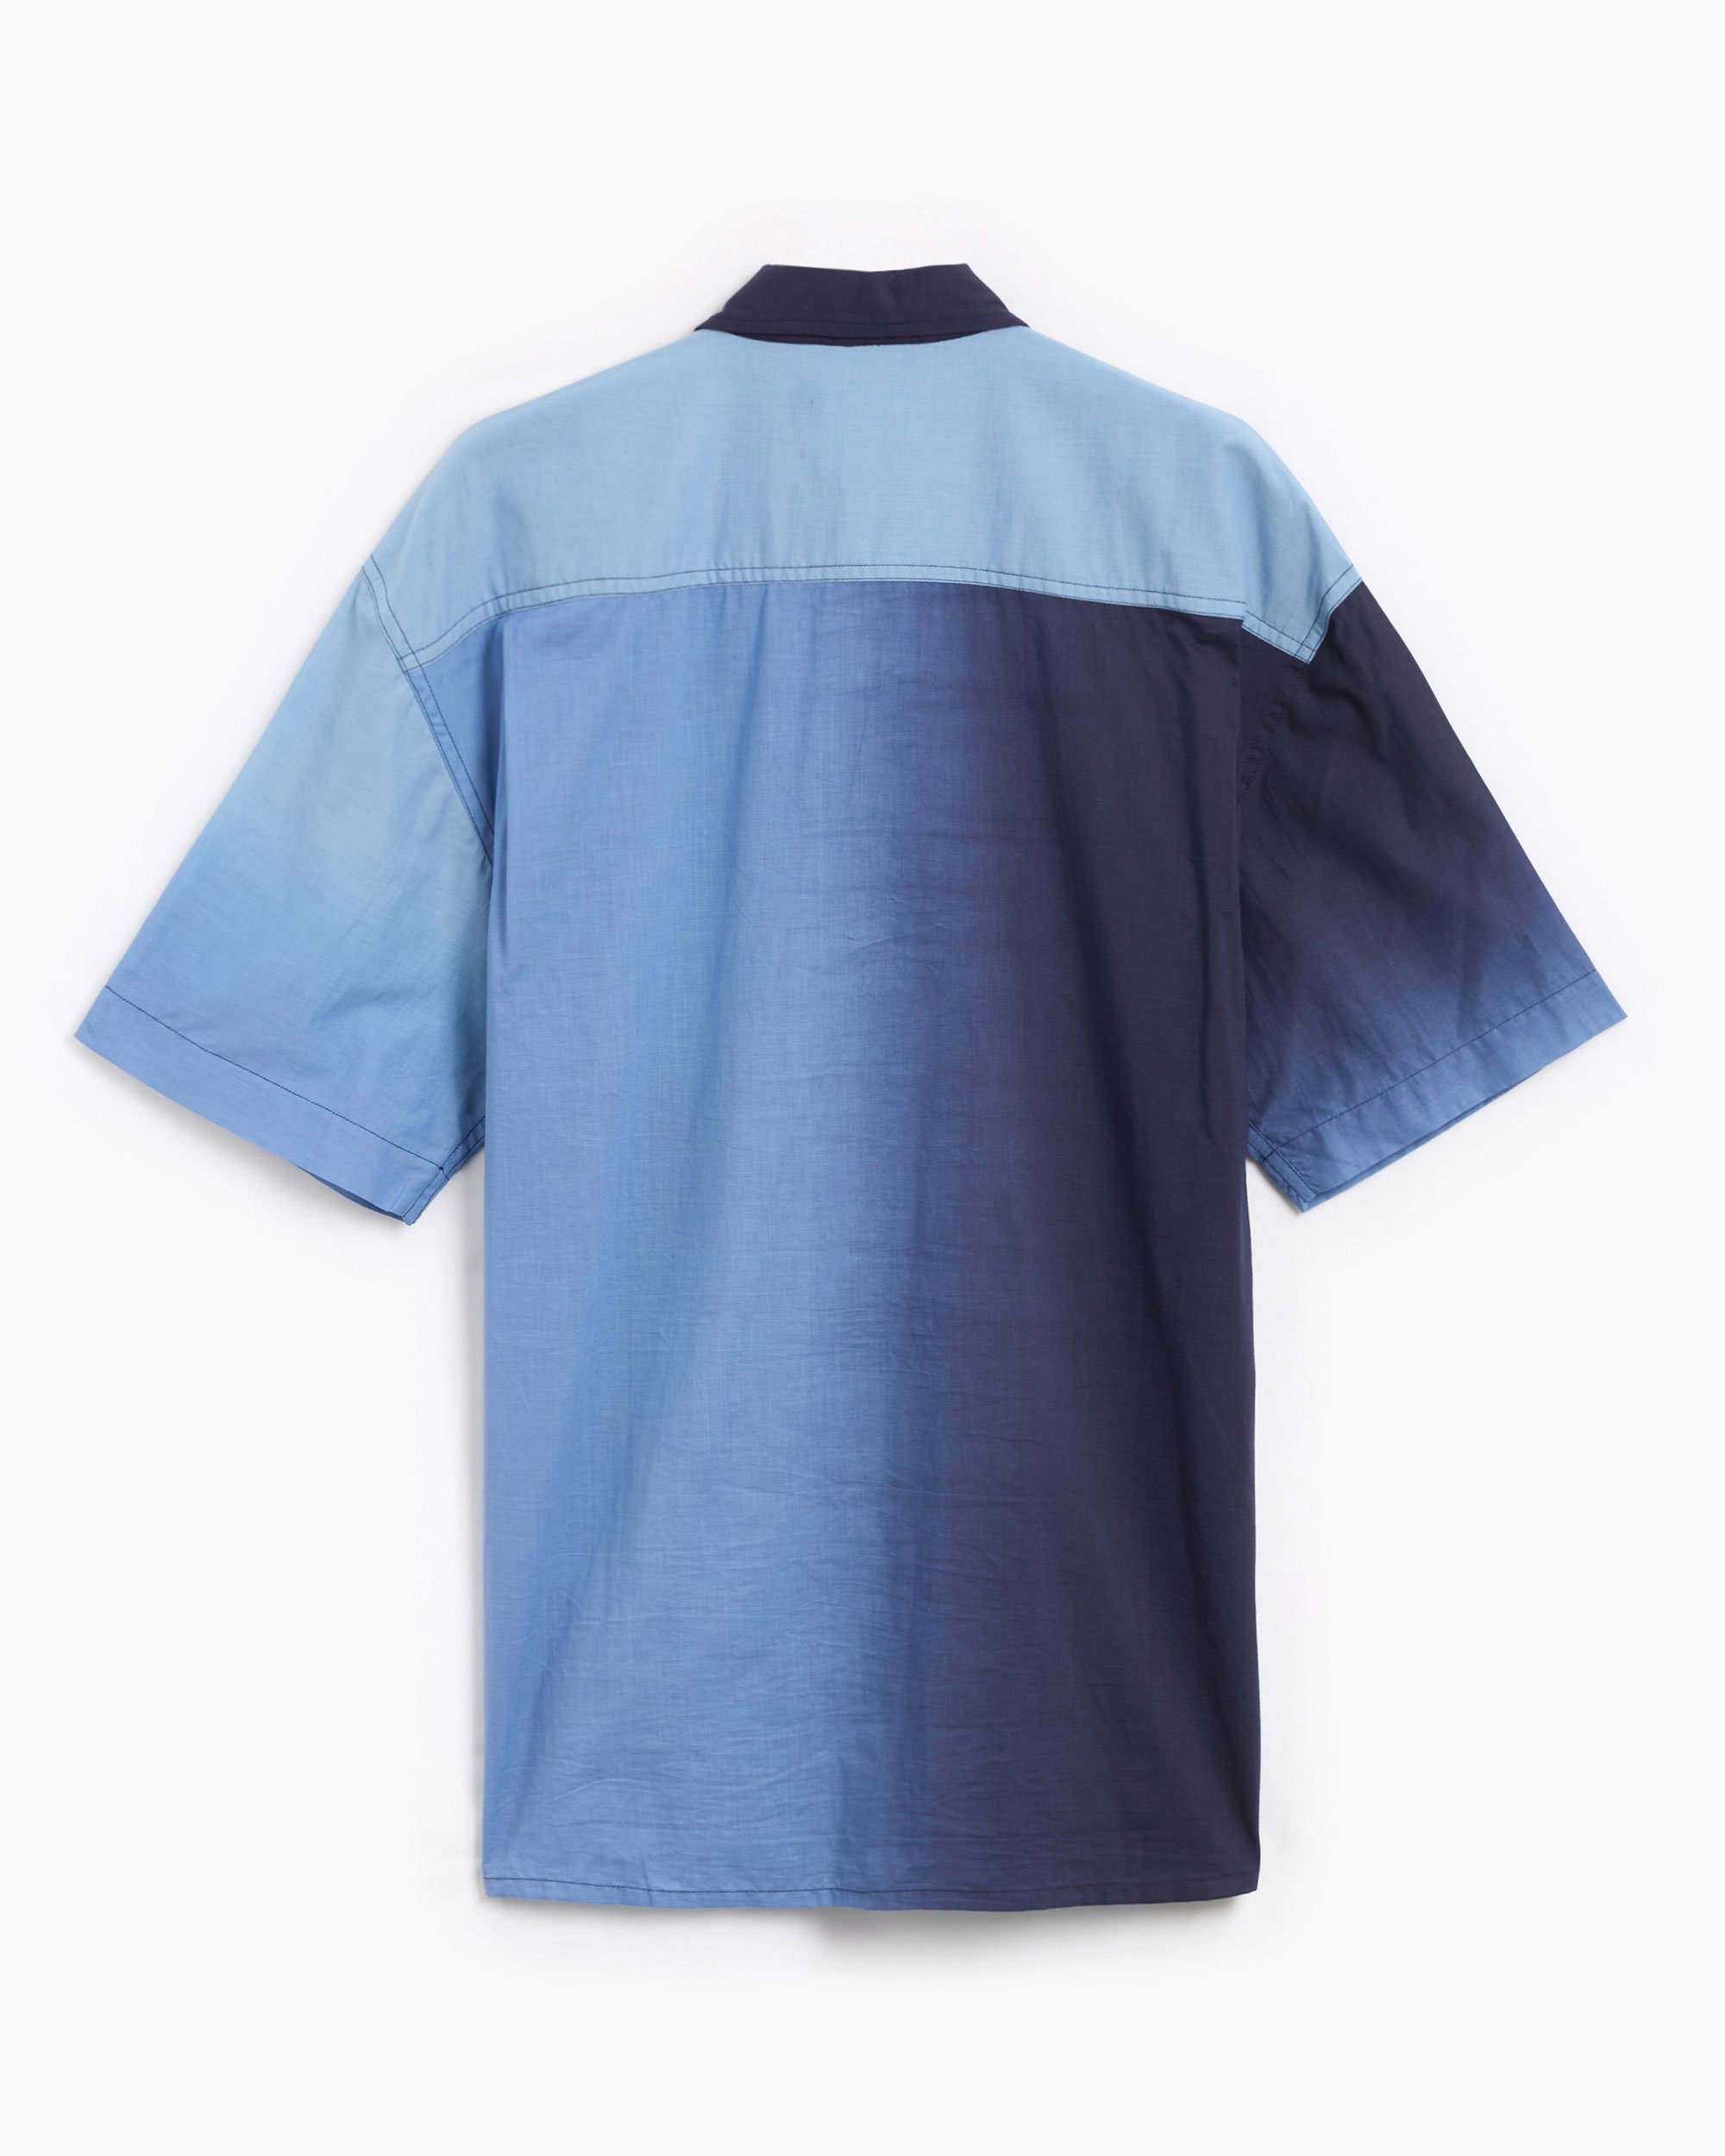 YMC Mitchum Men's Short Sleeve Shirt Blue P2WAX-BLUE| FOOTDISTRICT